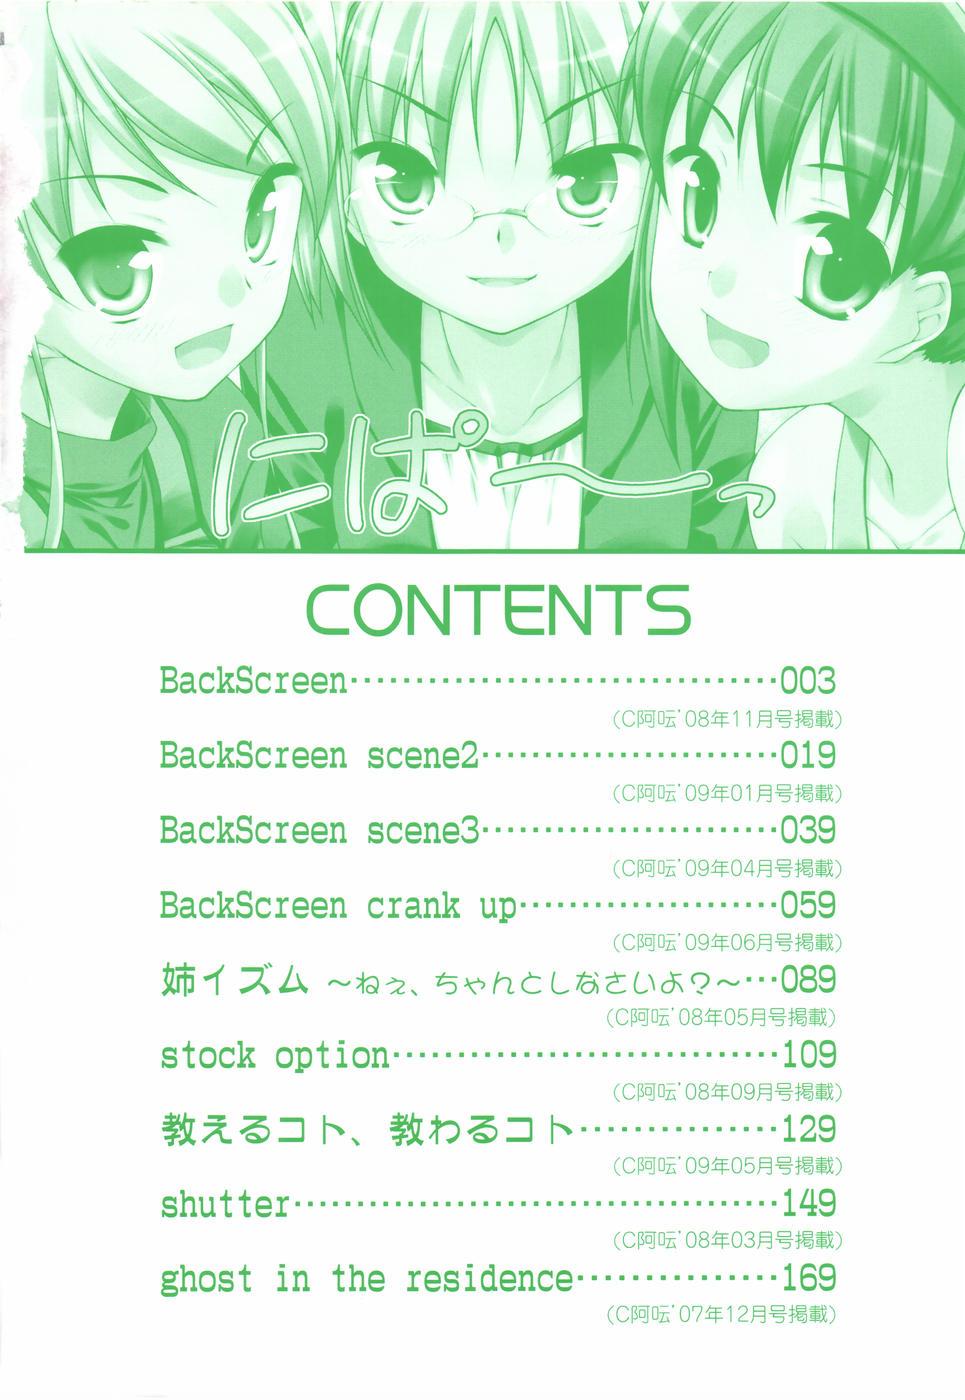 BackScreen 5